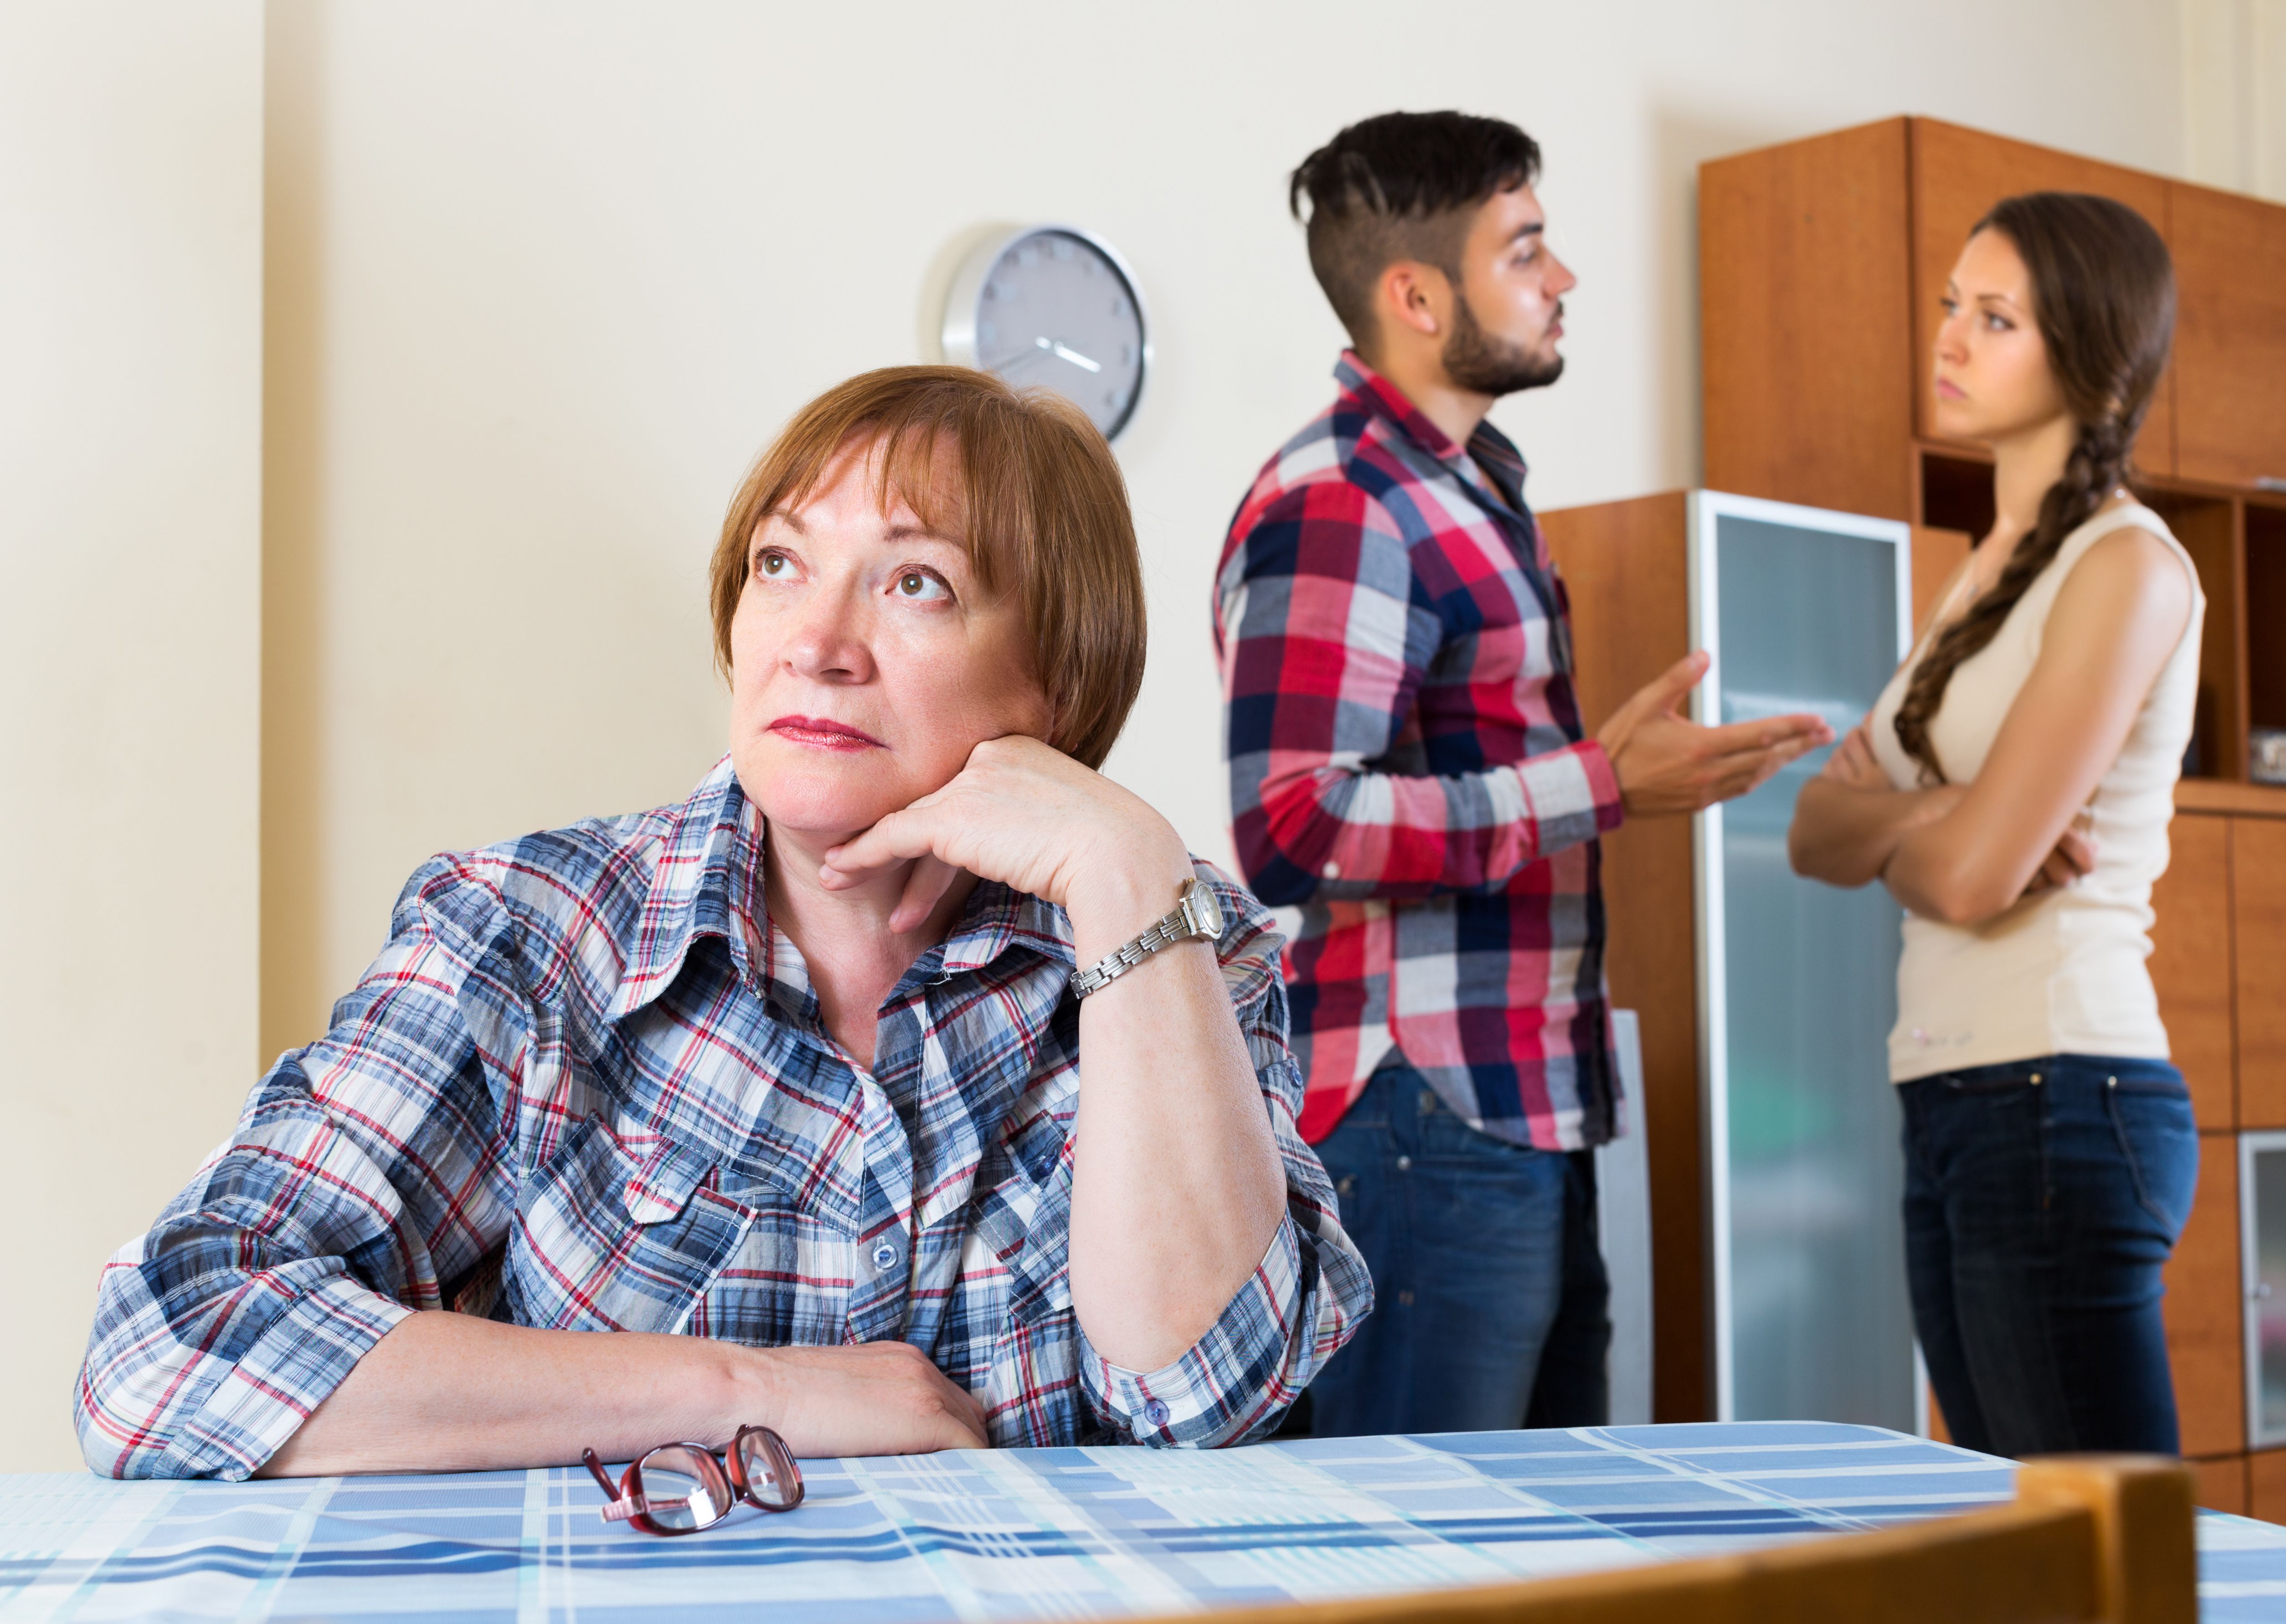 Une femme sur la table tandis que deux personnes parlent derrière elle. | Source : Getty Images